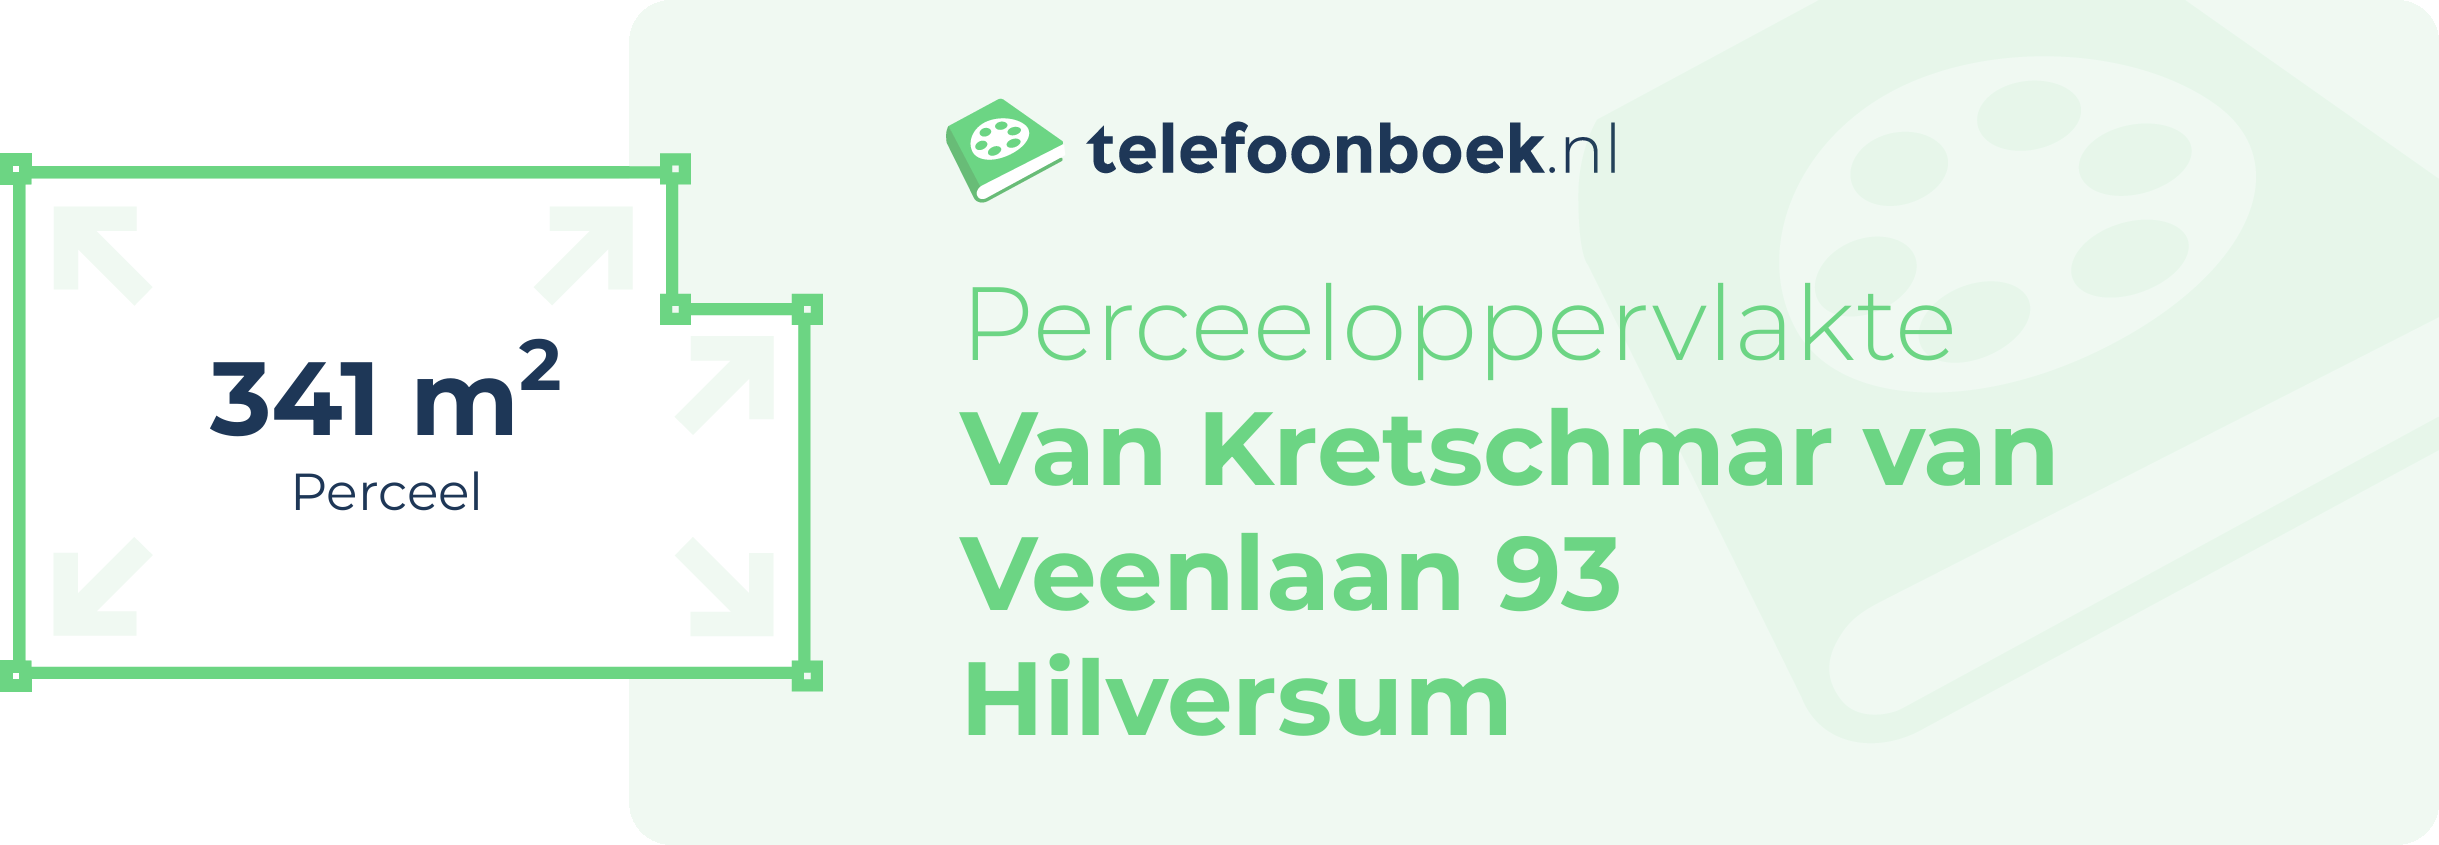 Perceeloppervlakte Van Kretschmar Van Veenlaan 93 Hilversum